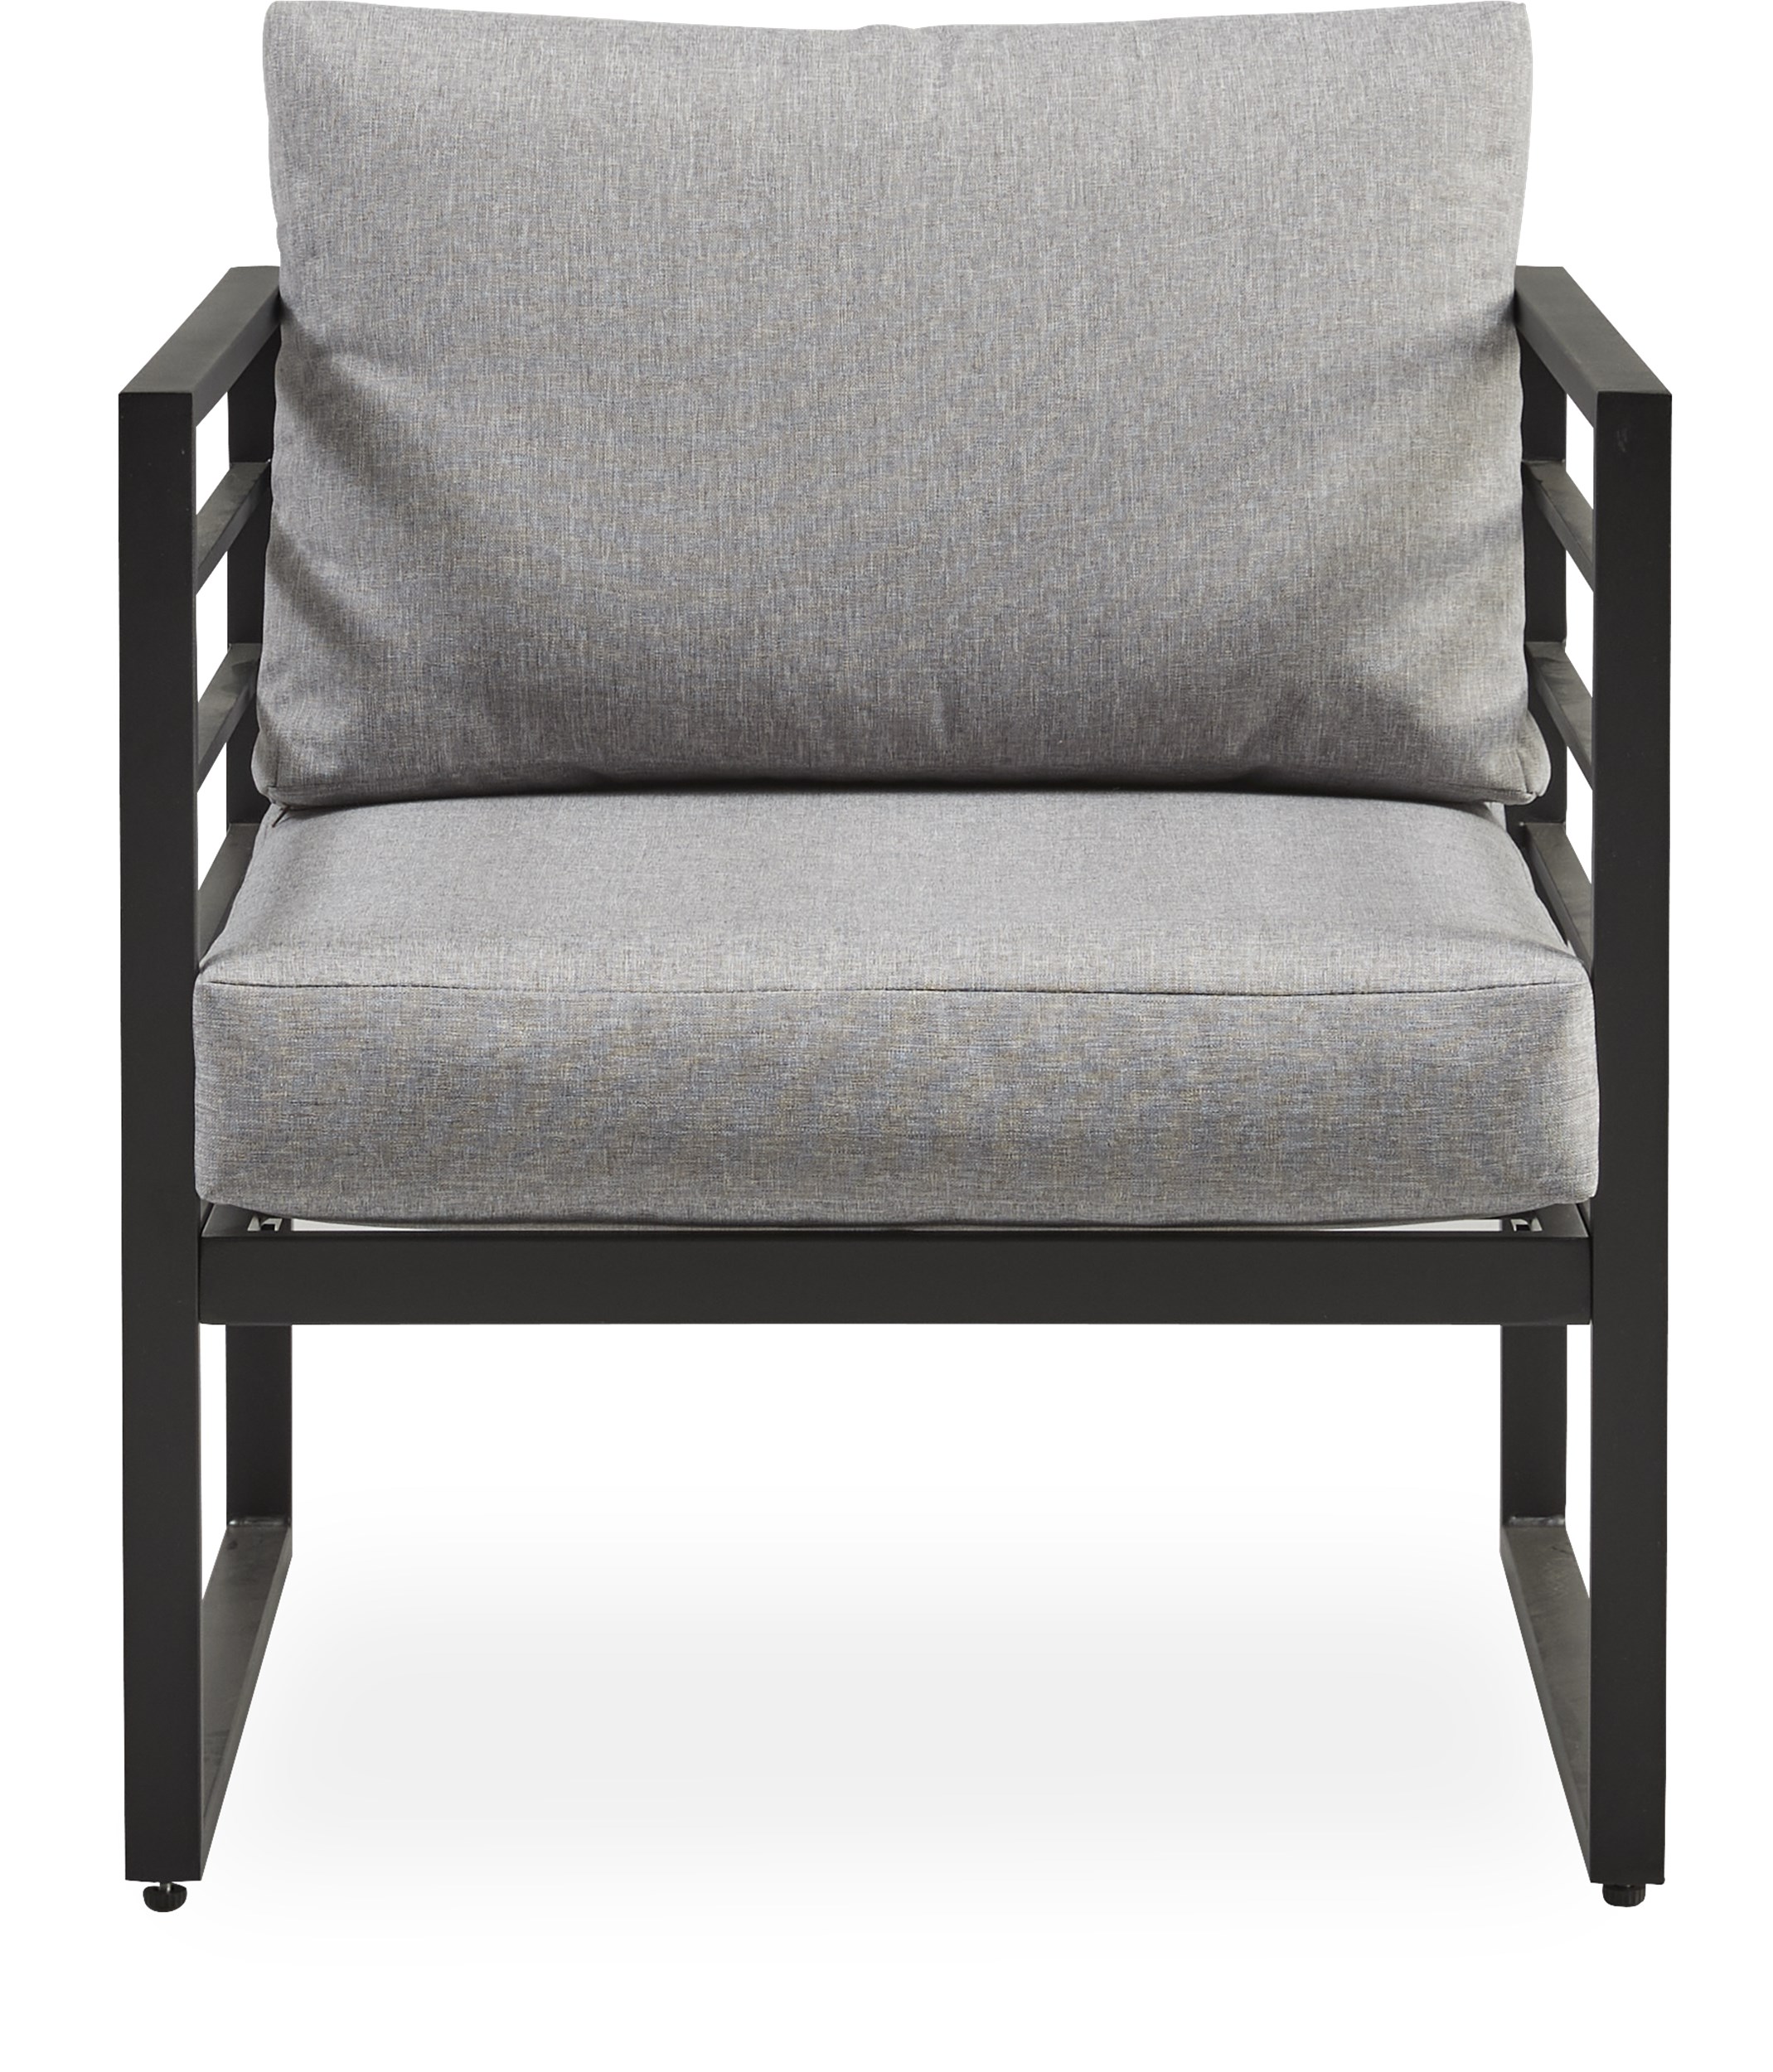 Kalmar Lounge vilostol - Stomme i svart pulverlackerad aluminium och kuddar i grå polyester